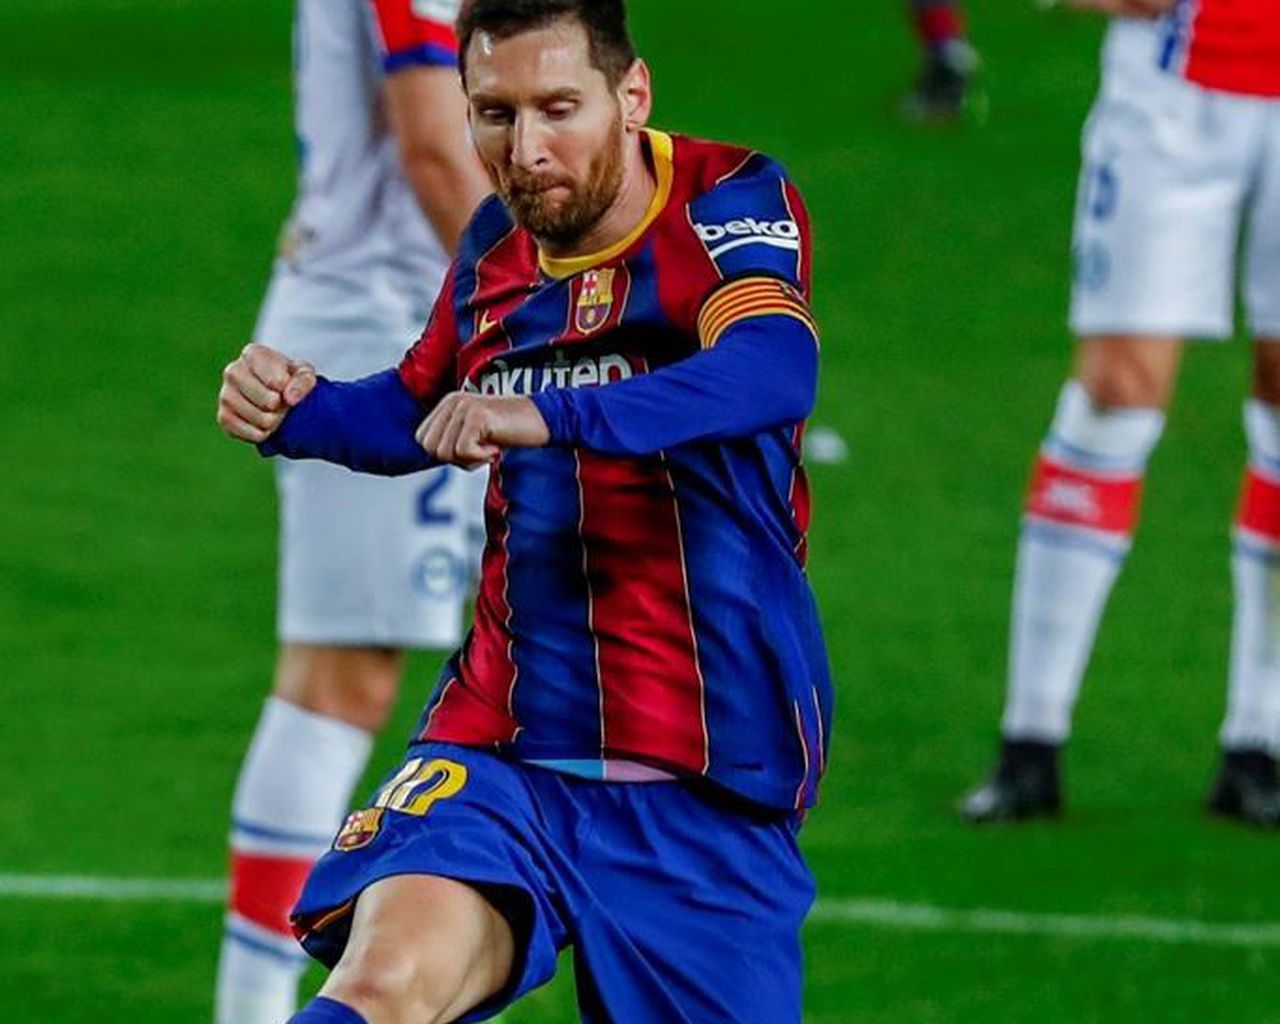 Messi anota 2 en el partido de LaLiga de 505, empatado por récords, ganando al Atlético